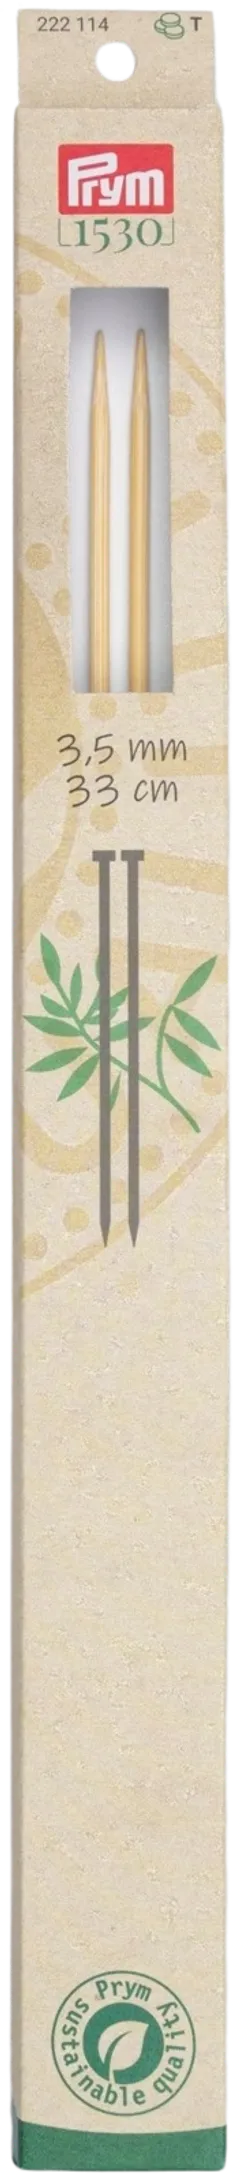 Prym neulepuikko 3,5 33cm bambu - 1